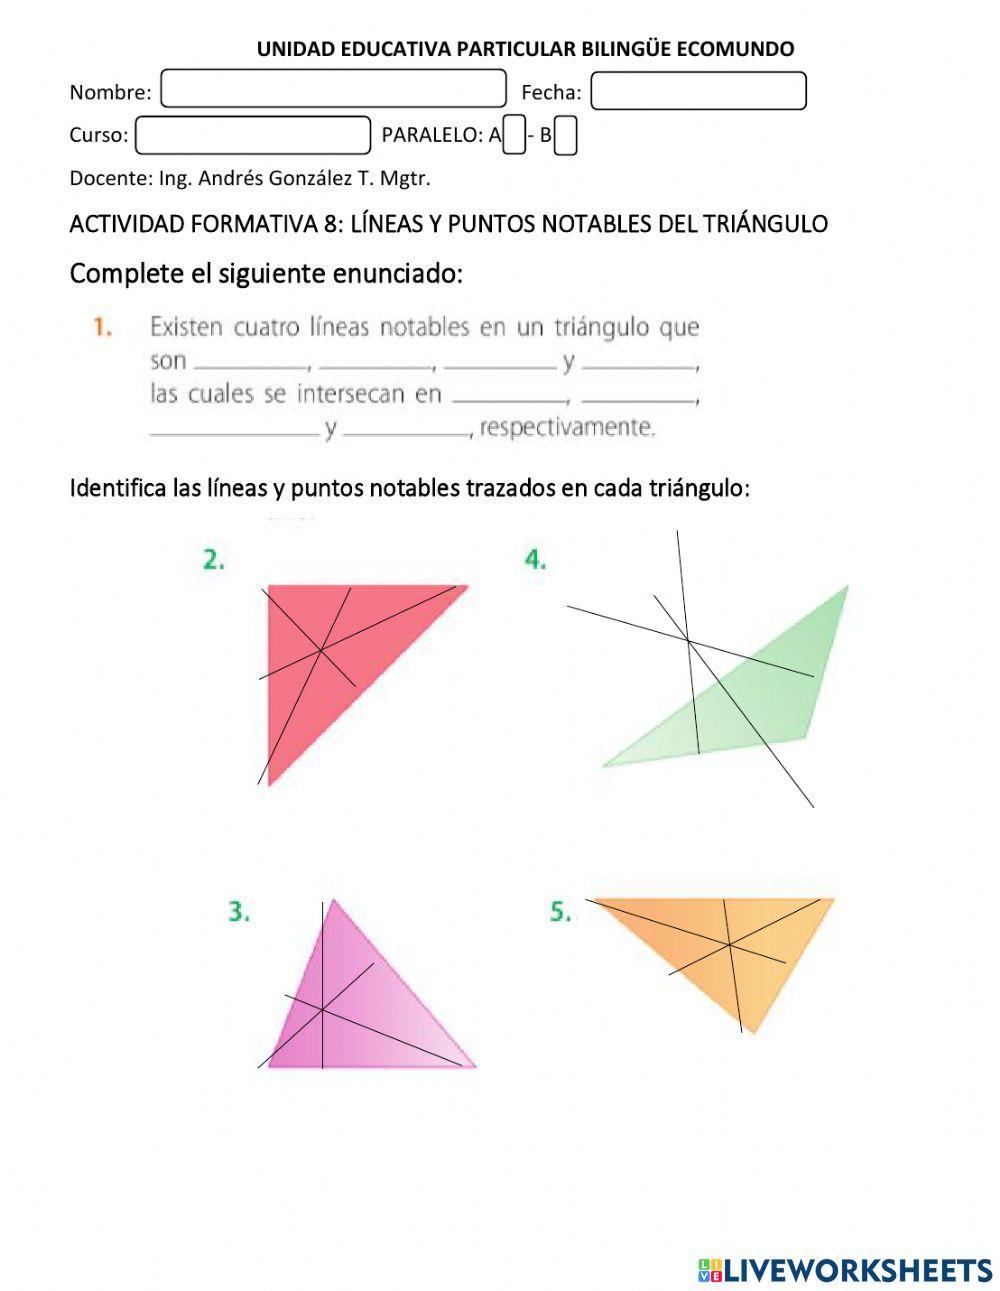 Lineas y puntos notables del triángulo